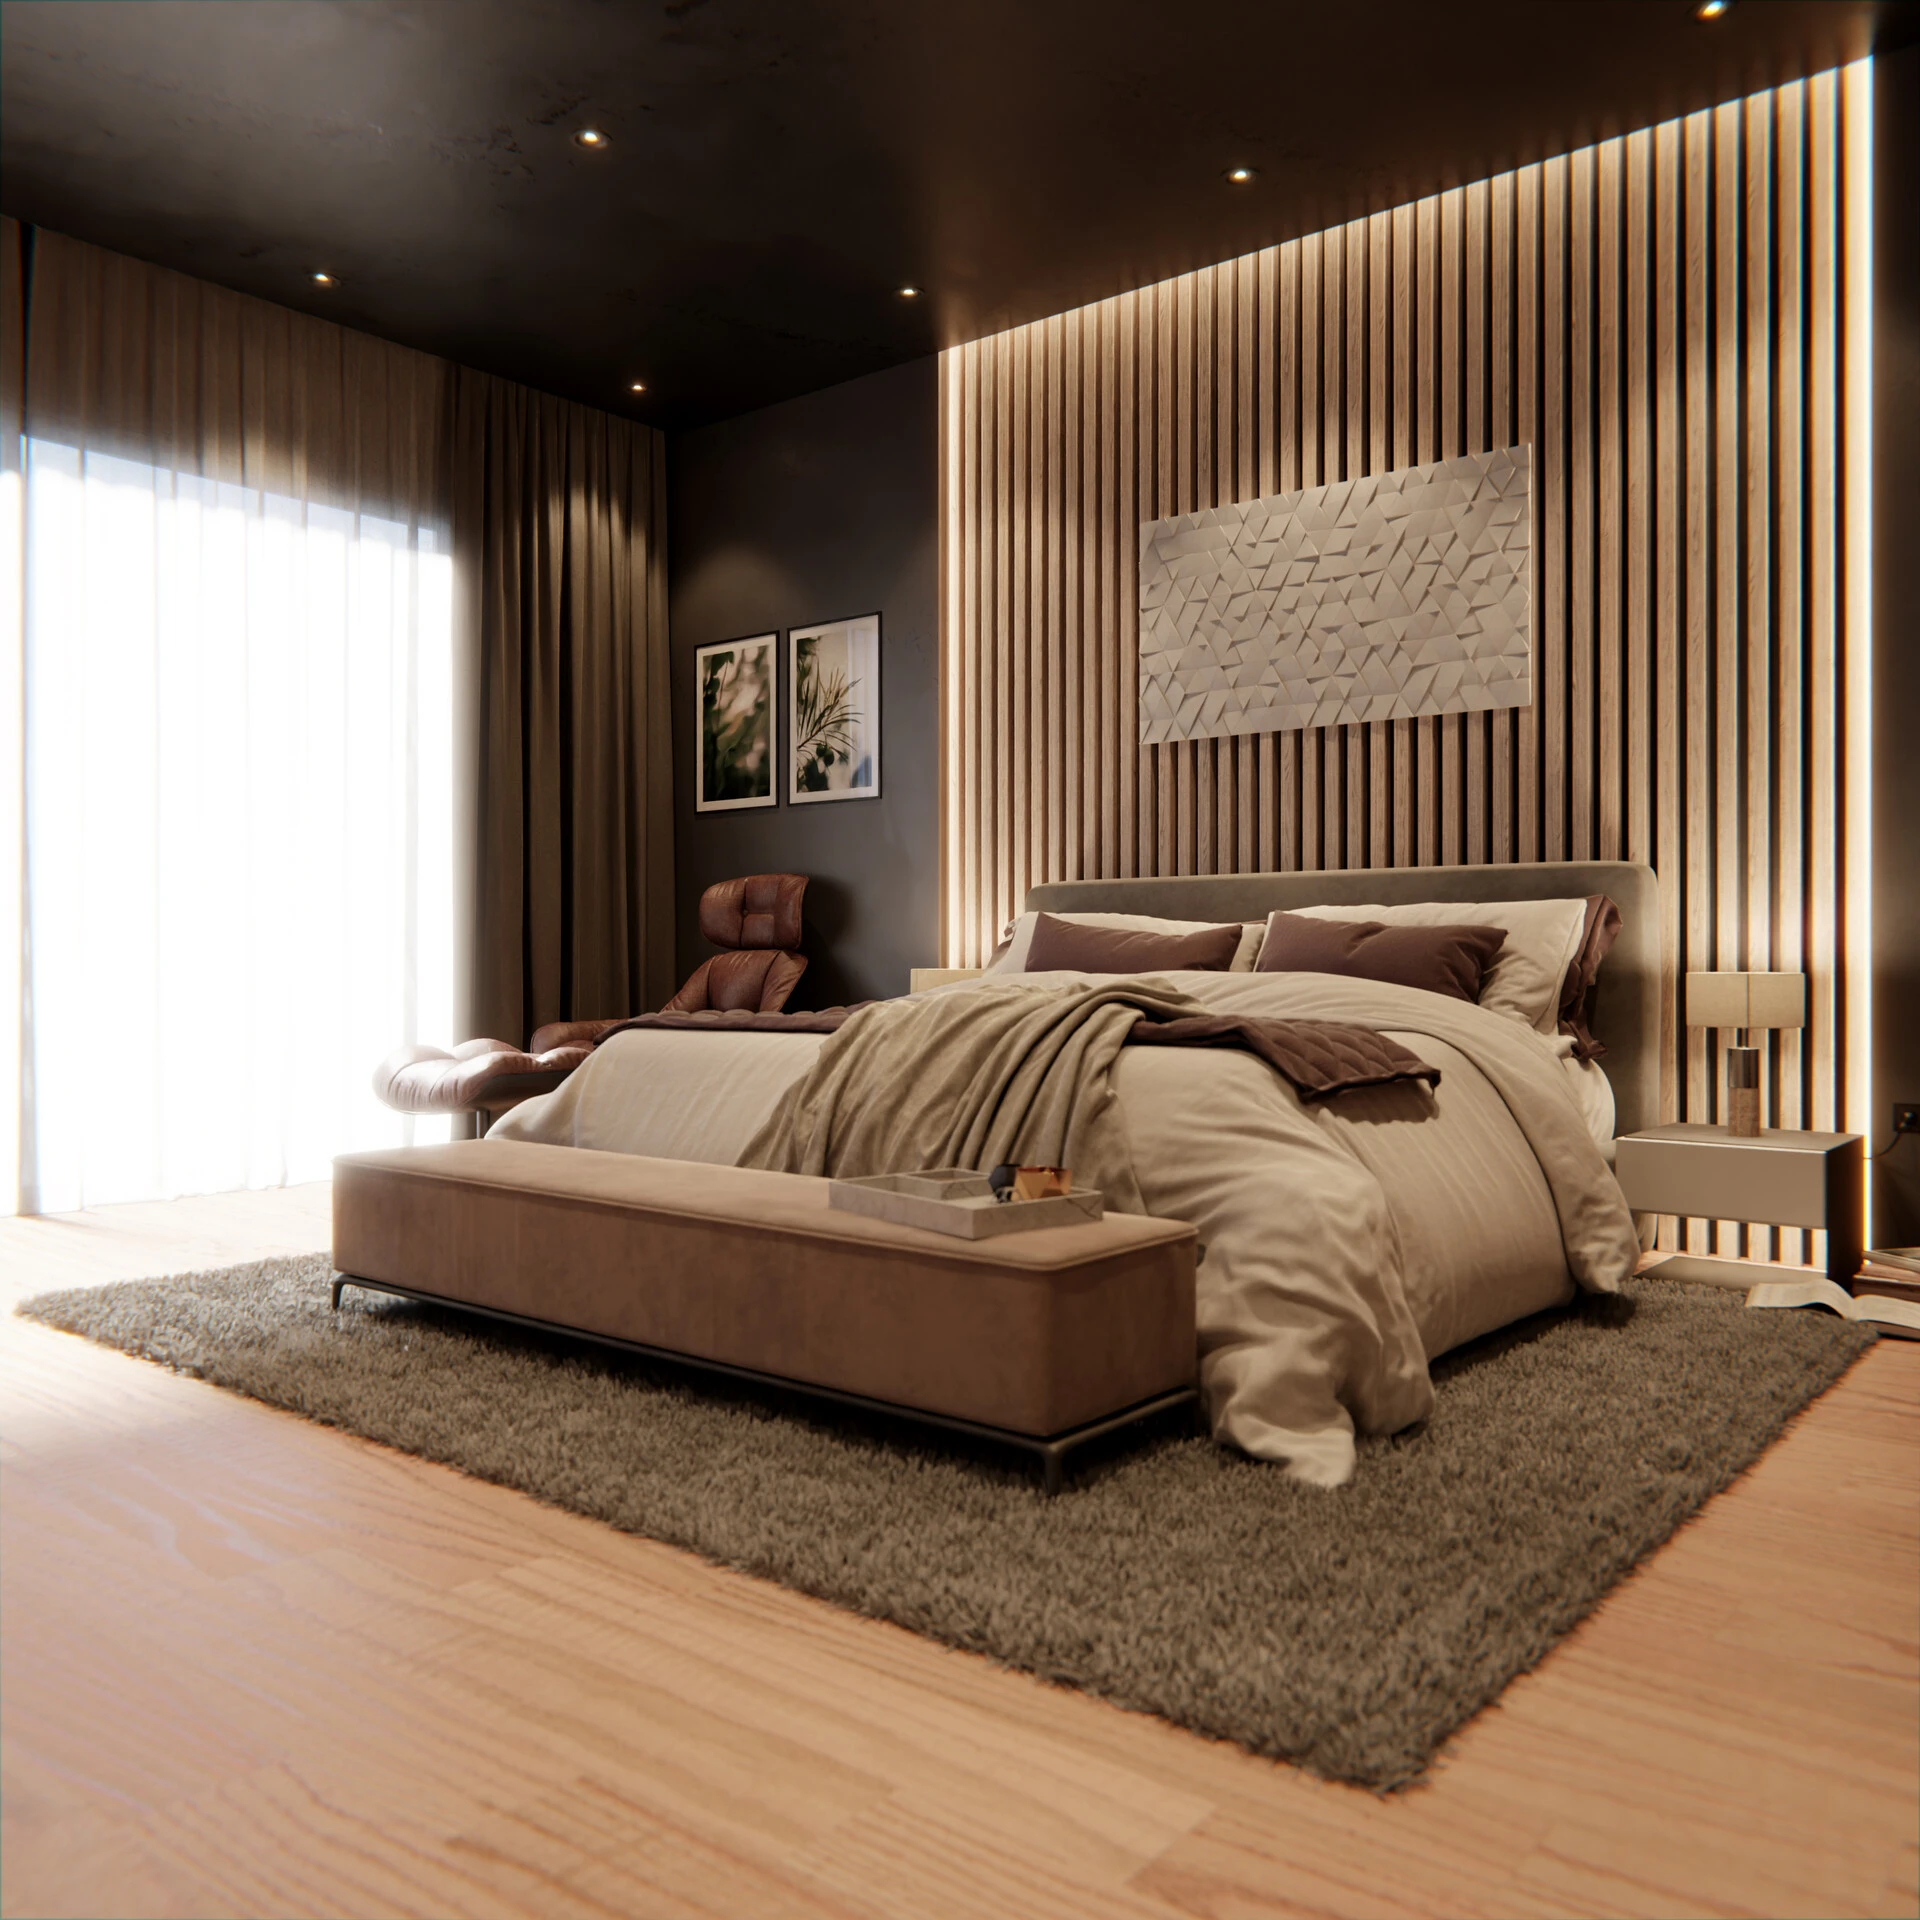 222-mario-abou-samra-bedroom-design-final-render-still-02-copy-17070604682154.jpg